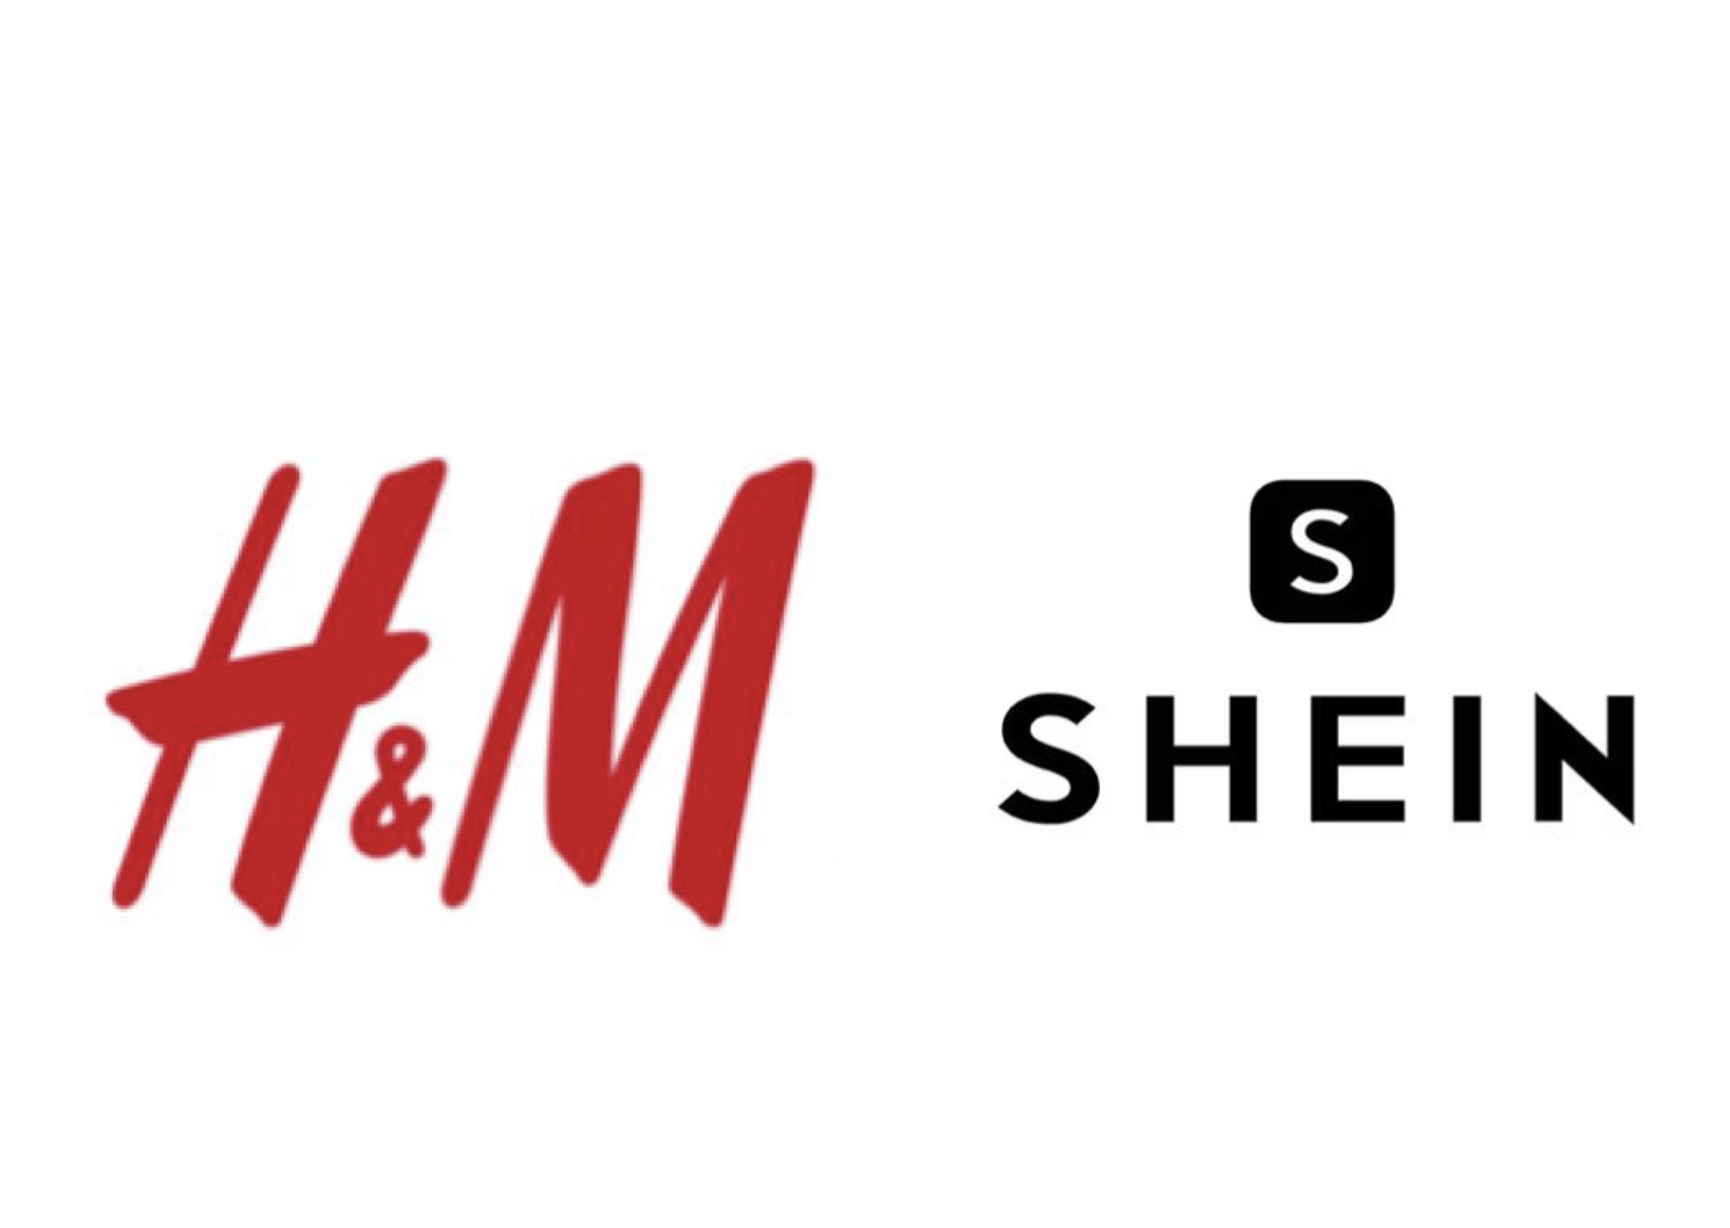 瑞典快時尚品牌 H&M 於香港起訴中國快時尚品牌 SHEIN 侵權